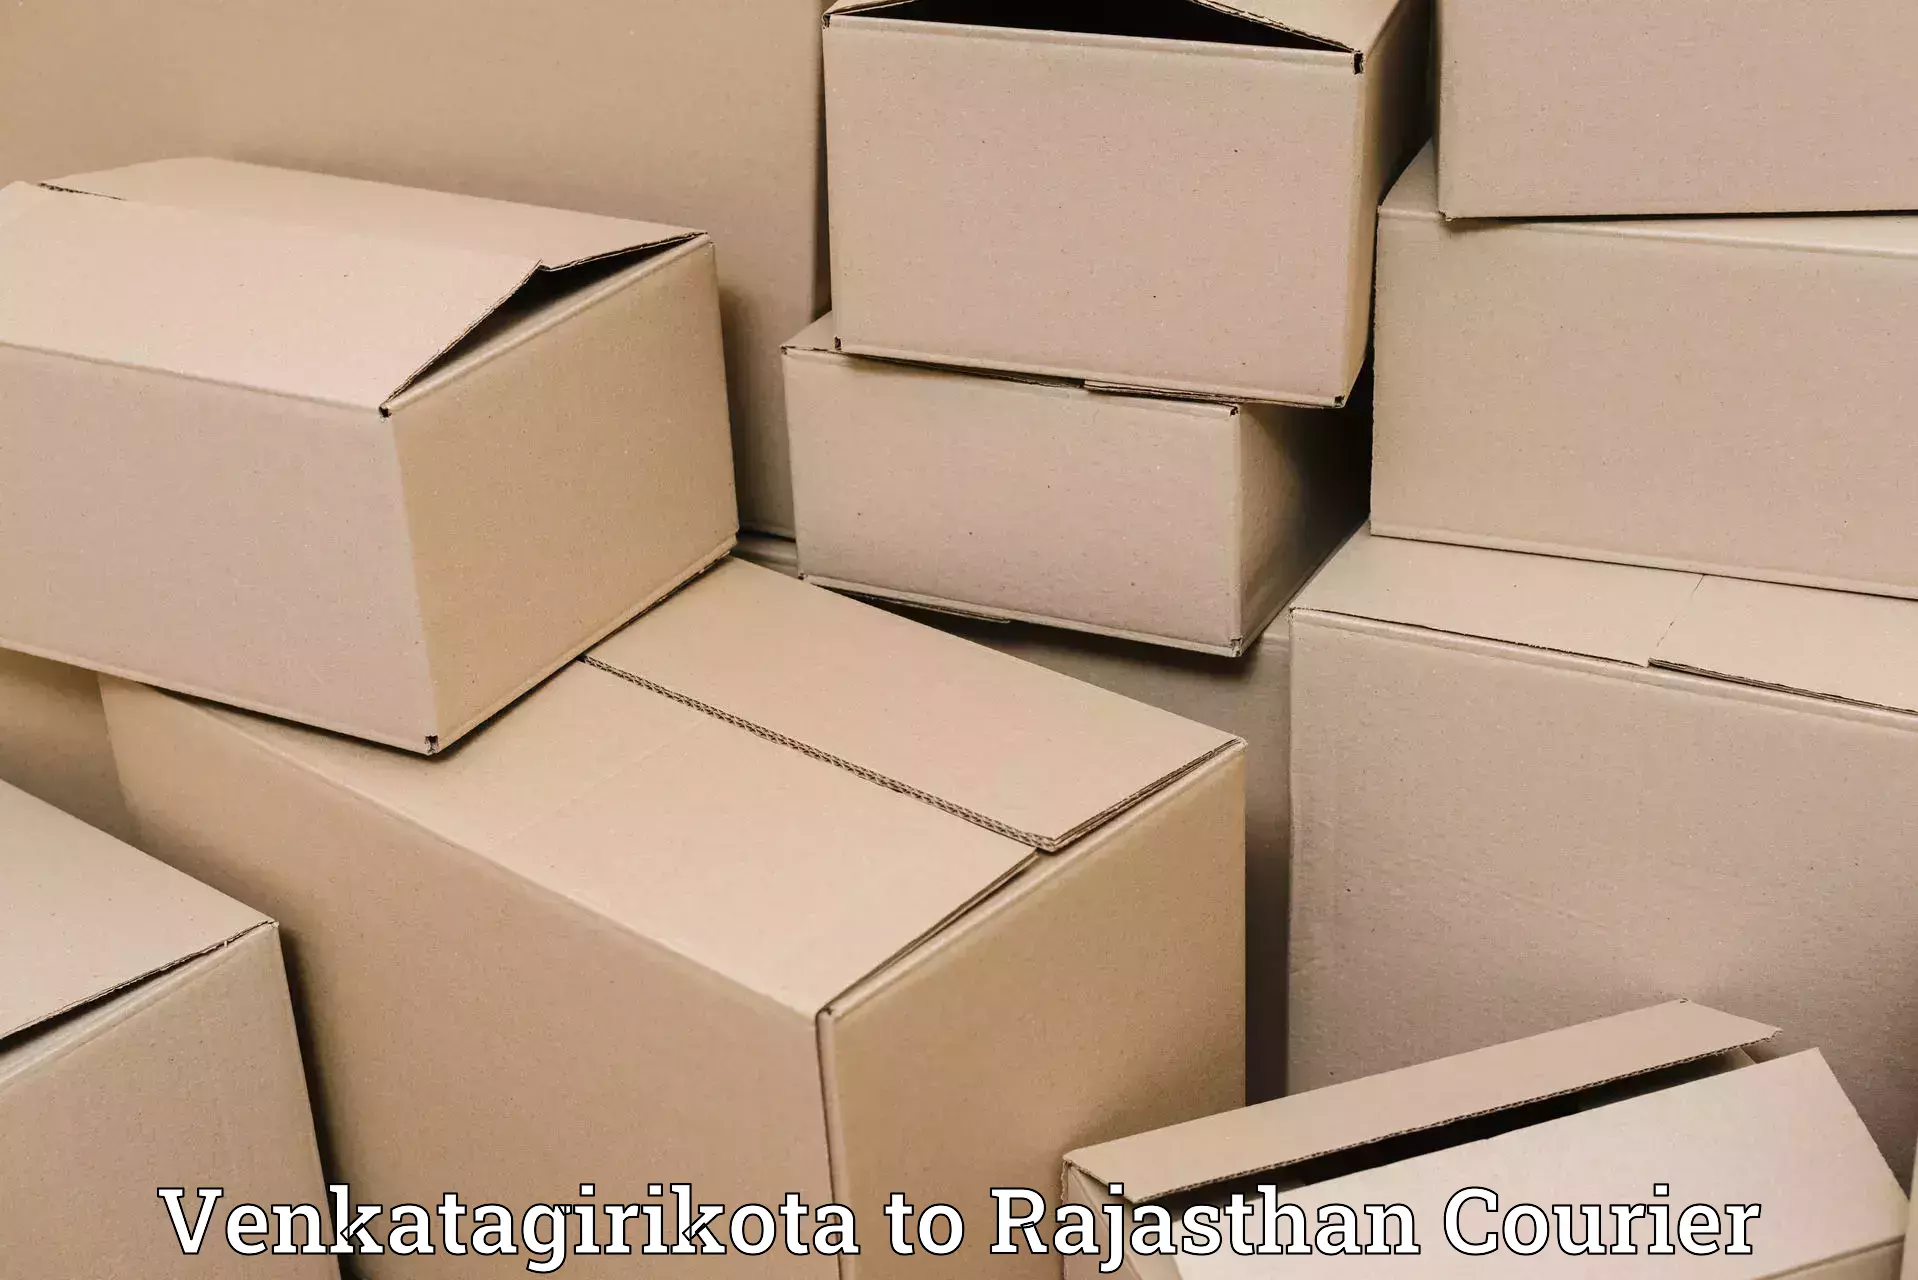 Luggage courier logistics Venkatagirikota to Rajasthan